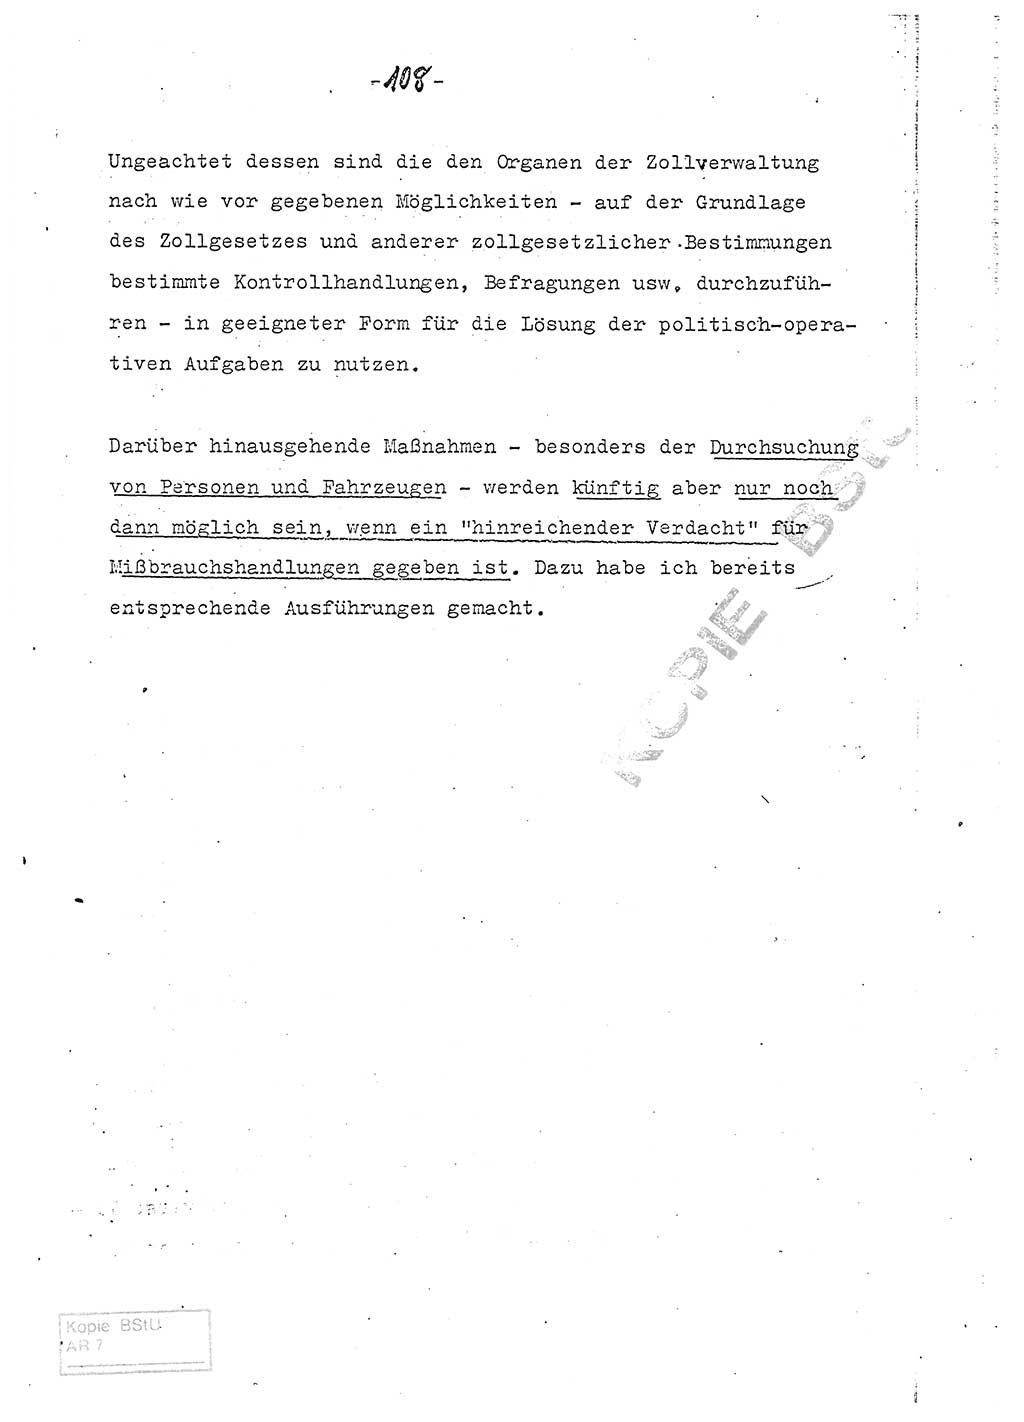 Referat (Entwurf) des Genossen Minister (Generaloberst Erich Mielke) auf der Dienstkonferenz 1972, Ministerium für Staatssicherheit (MfS) [Deutsche Demokratische Republik (DDR)], Der Minister, Geheime Verschlußsache (GVS) 008-150/72, Berlin 25.2.1972, Seite 108 (Ref. Entw. DK MfS DDR Min. GVS 008-150/72 1972, S. 108)